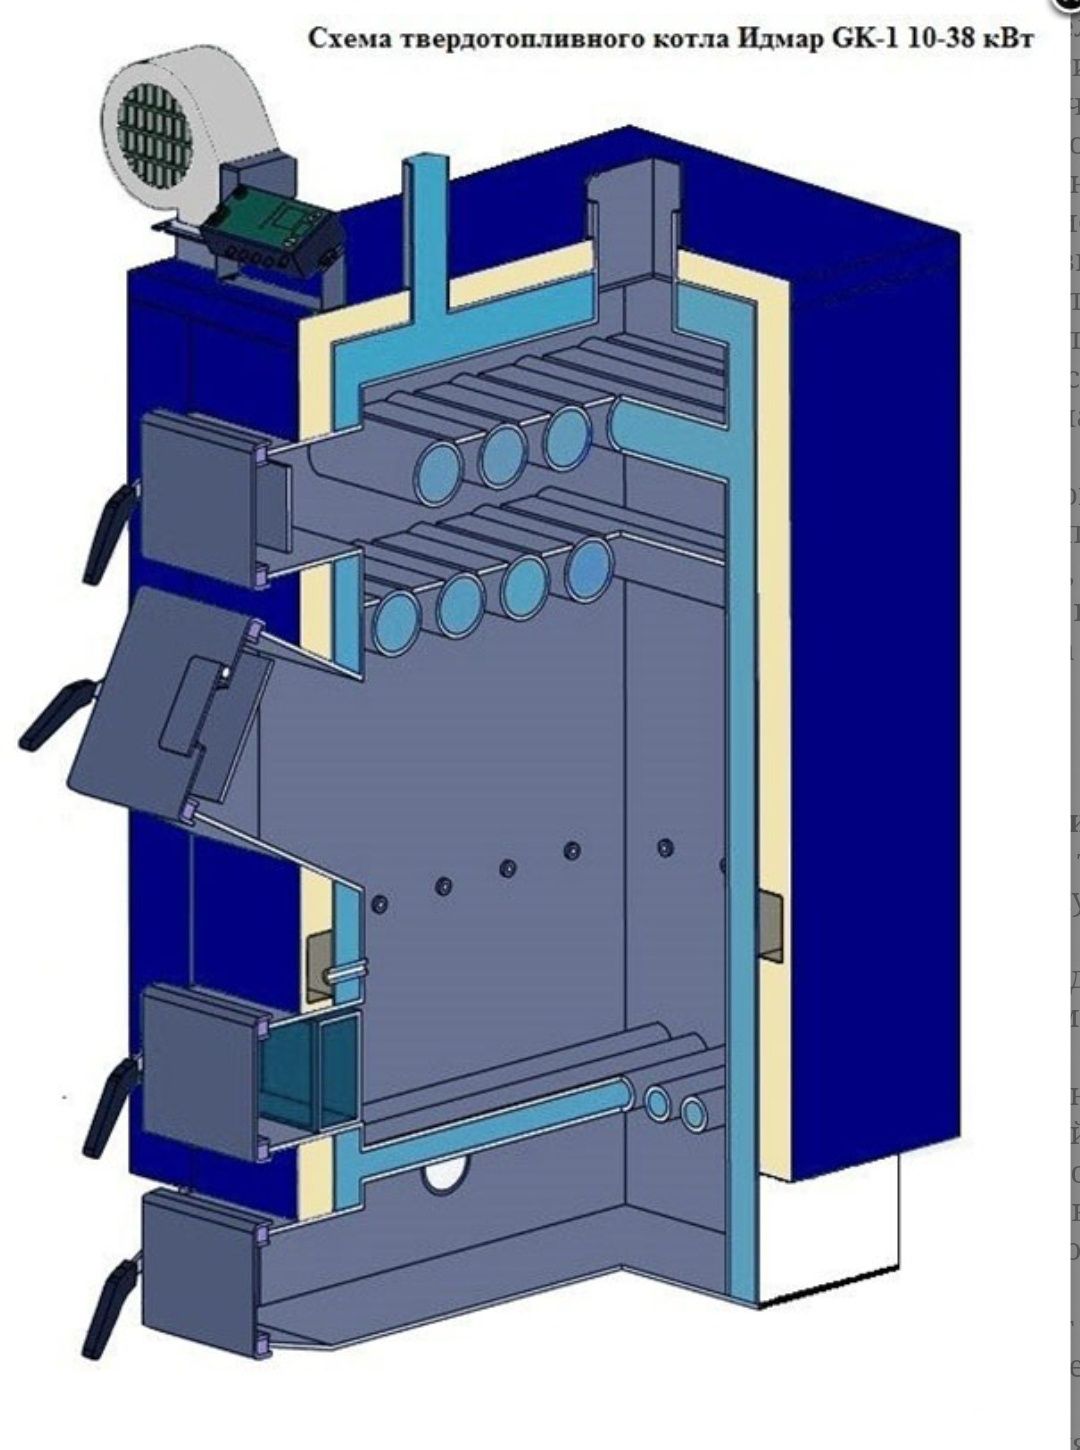 Надежный котел Идмар ЖК-1 твердотопливный котёл. От 10 кВт -120 кВт!